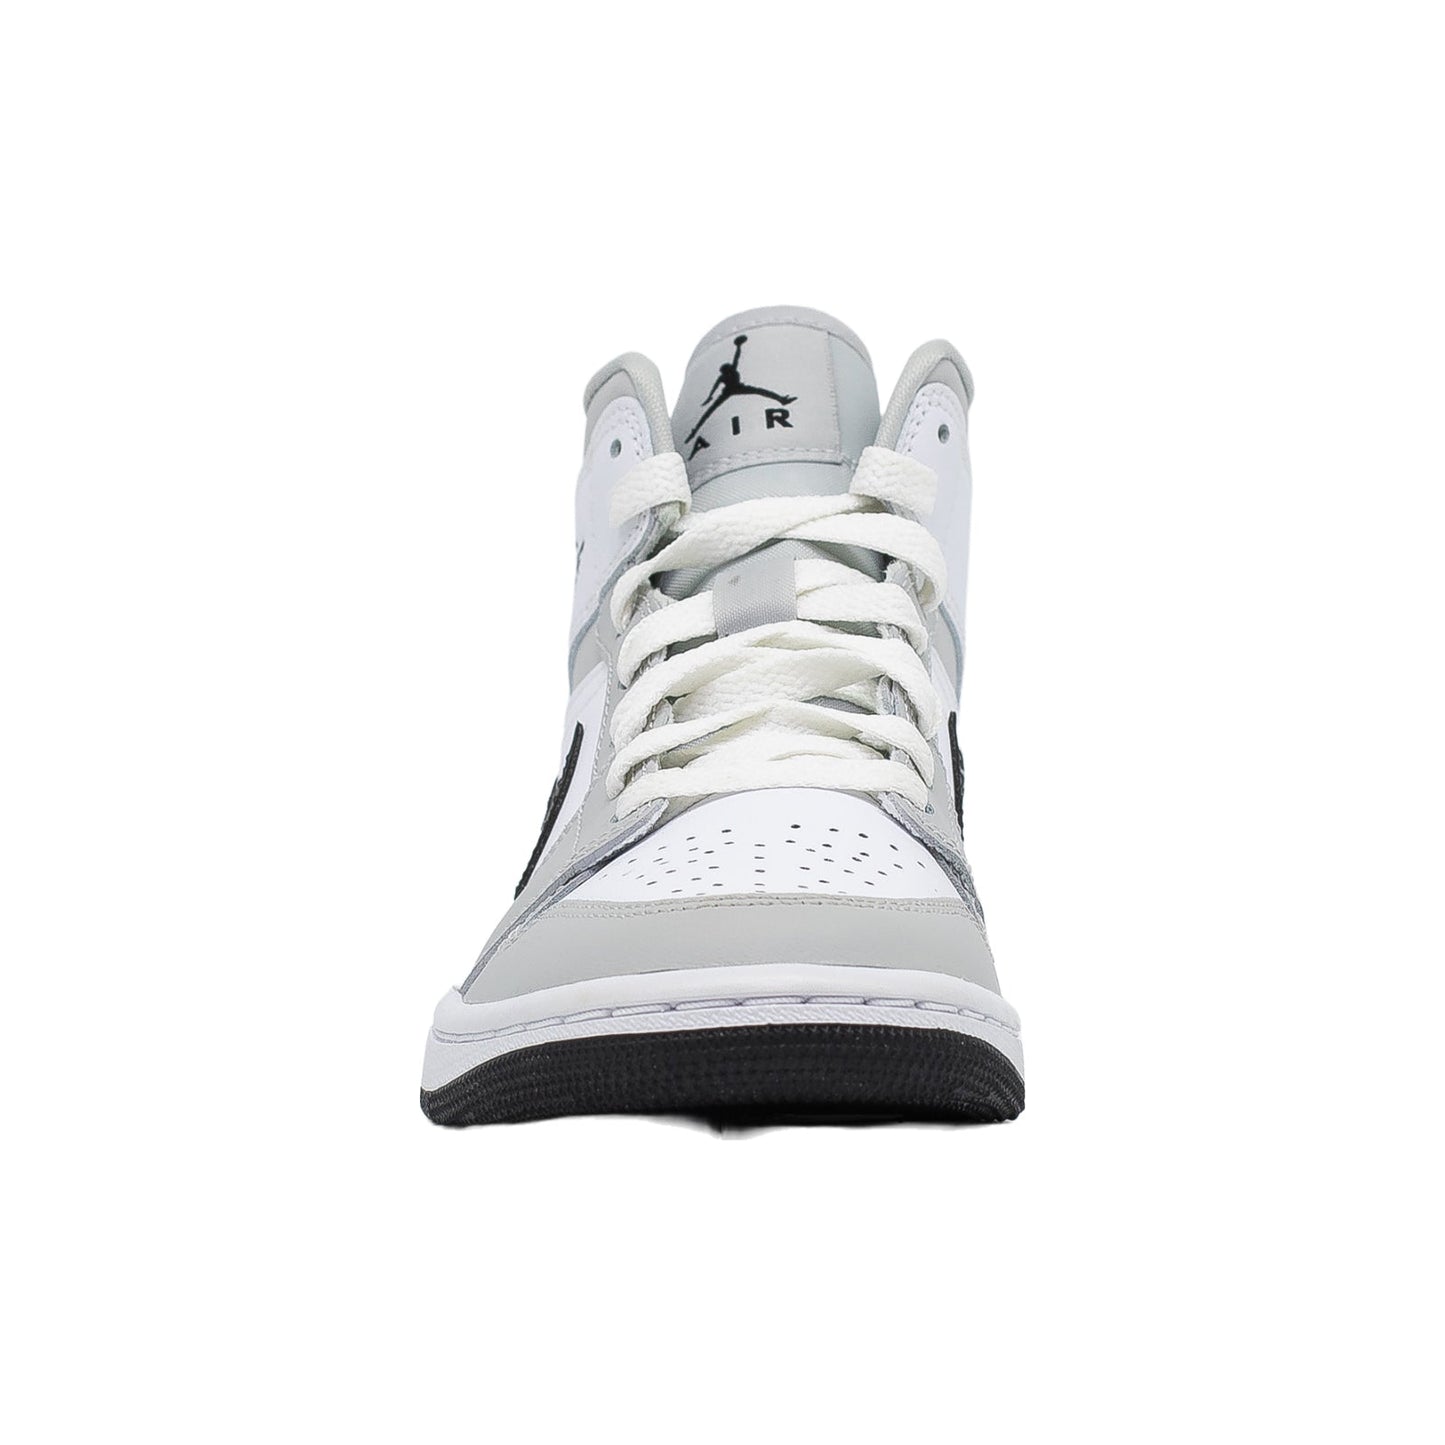 Women's Air Air Jordan 3 Retro White Cement Gold Nike Air ouss_29, Grey Fog